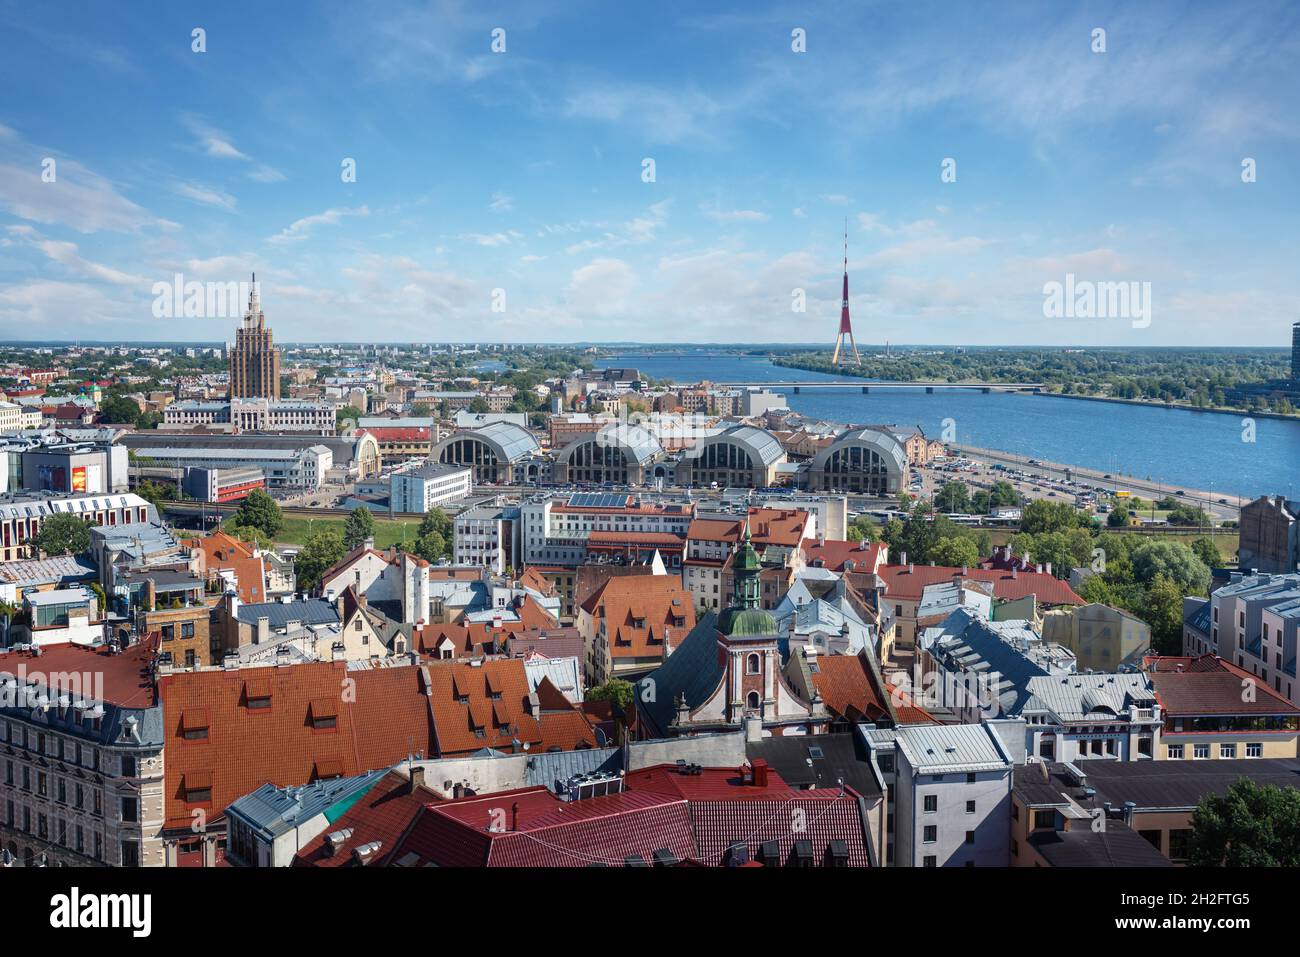 Luftaufnahme von Riga mit der Lettischen Akademie der Wissenschaften, dem Rigaer Zentralmarkt und dem Rigaer Radio- und Fernsehturm - Riga, Lettland Stockfoto